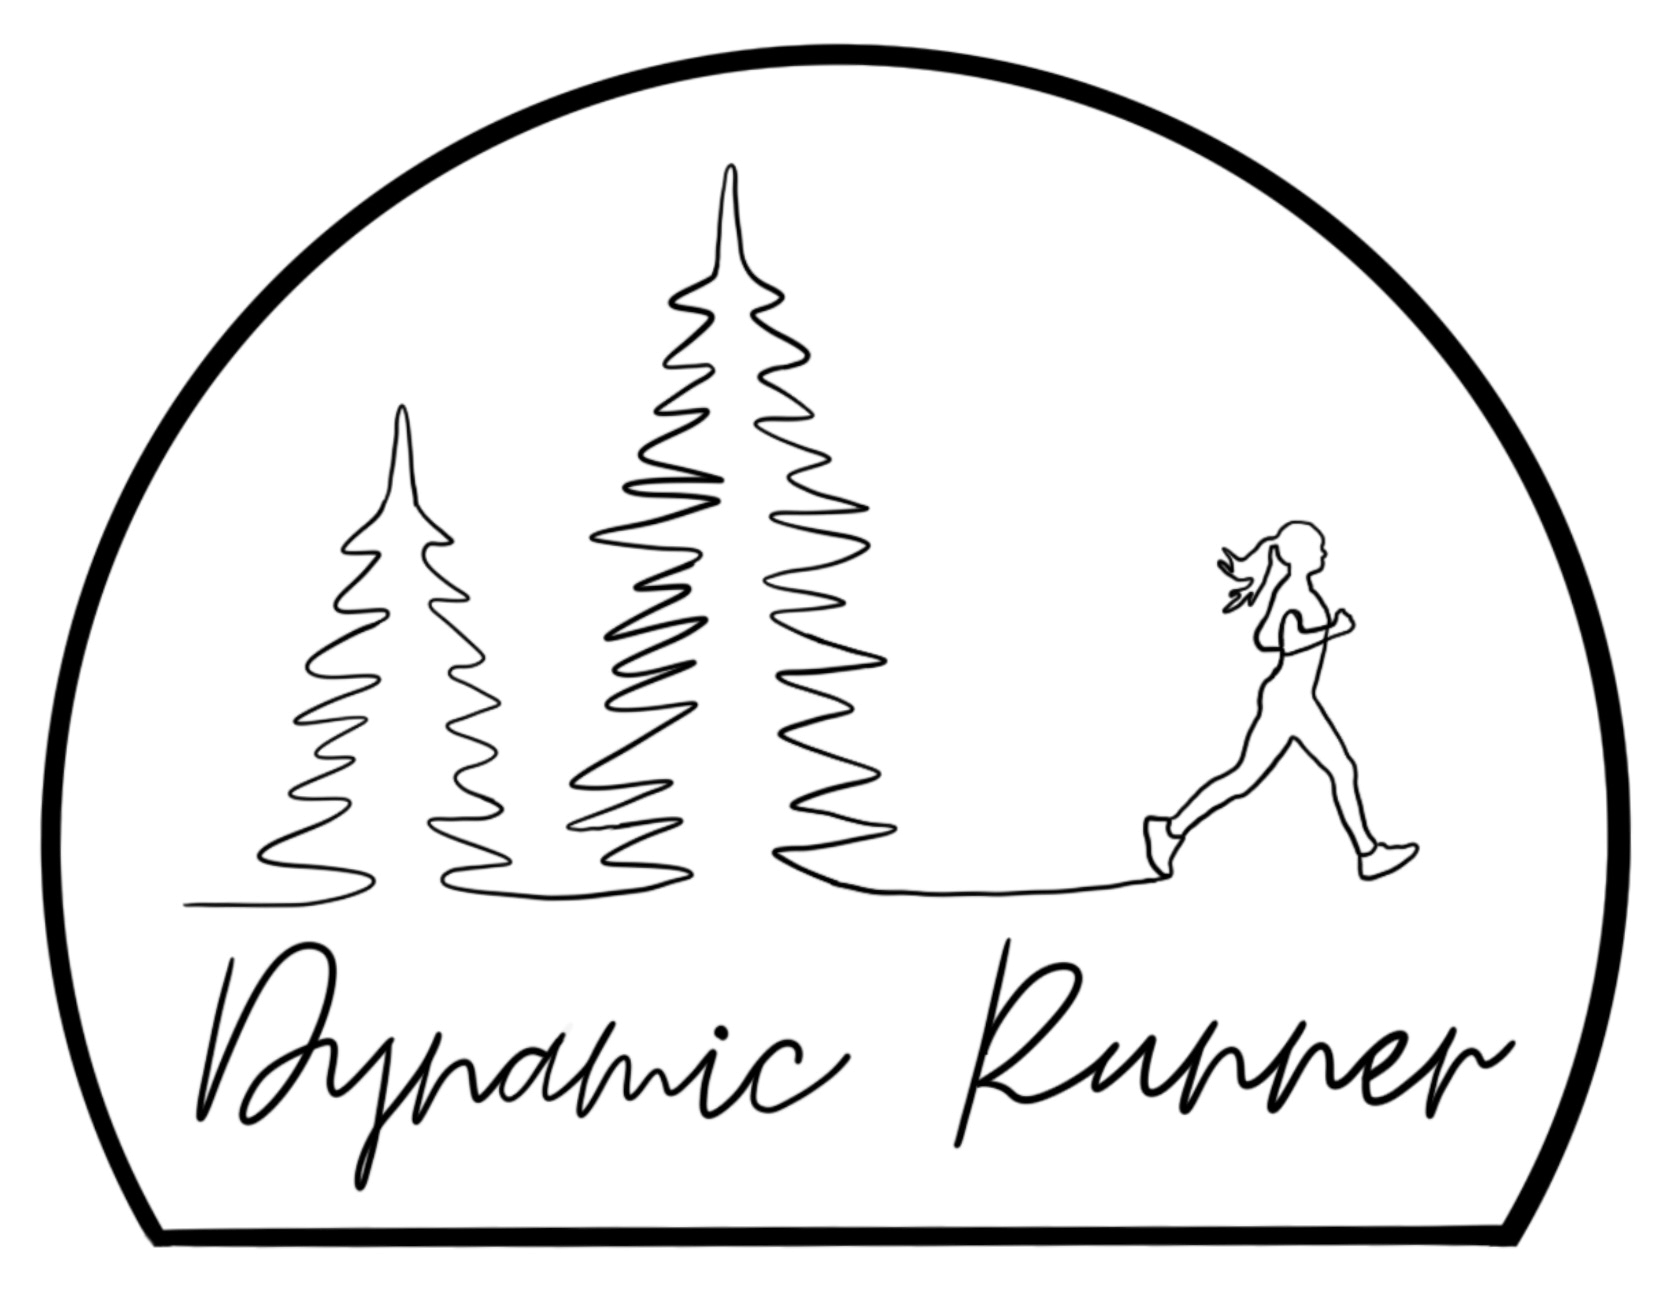 Dynamic Runner